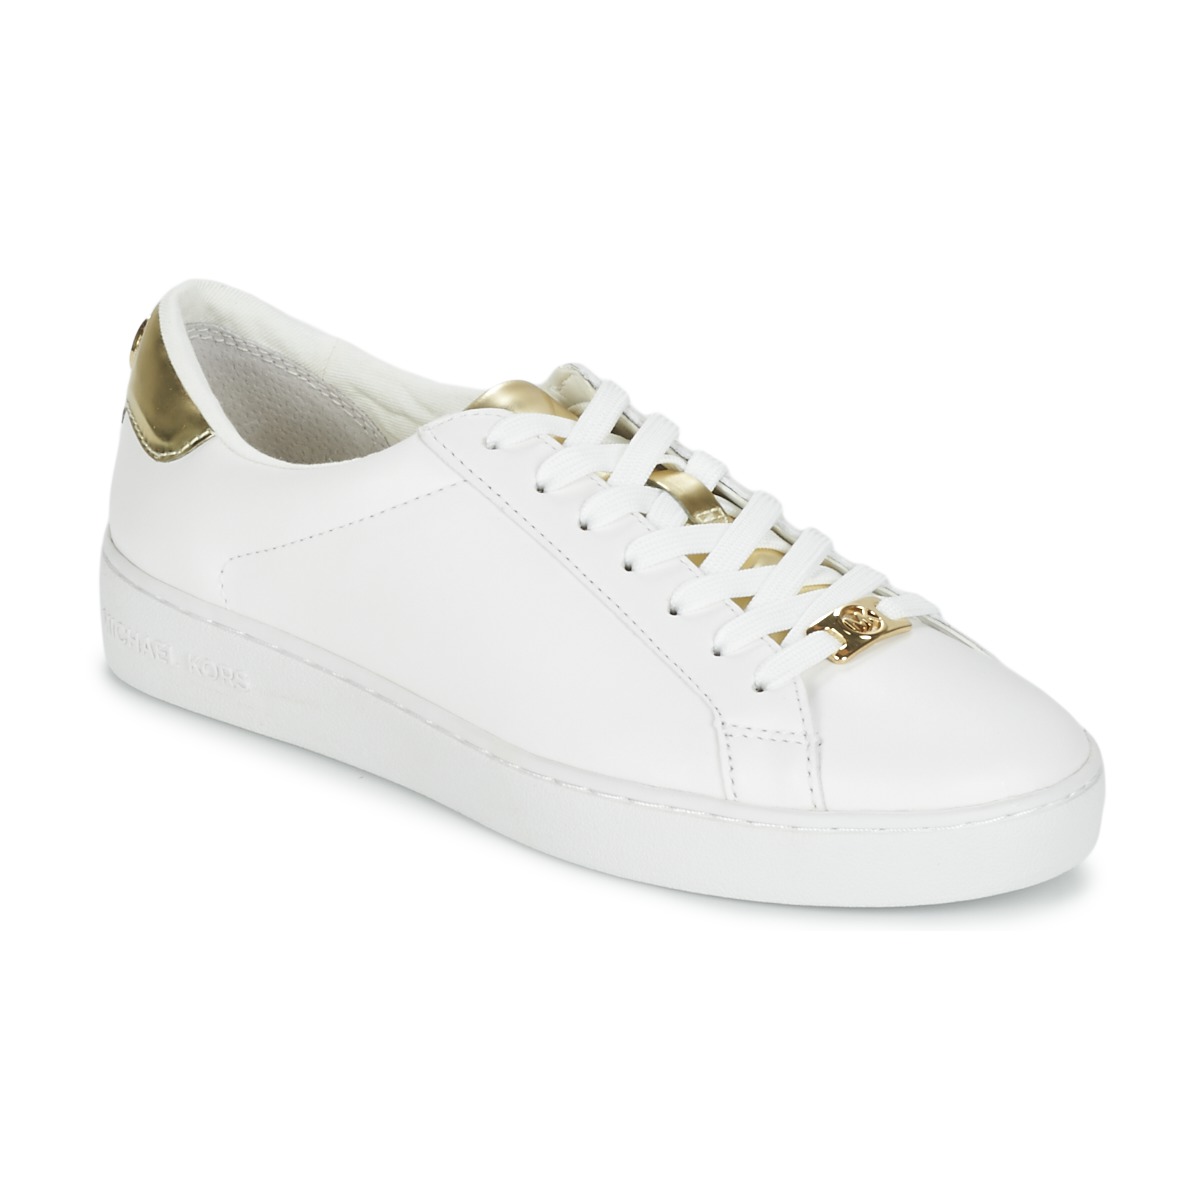 Zapatos Mujer Zapatillas bajas MICHAEL Michael Kors IRVING Blanco / Dorado